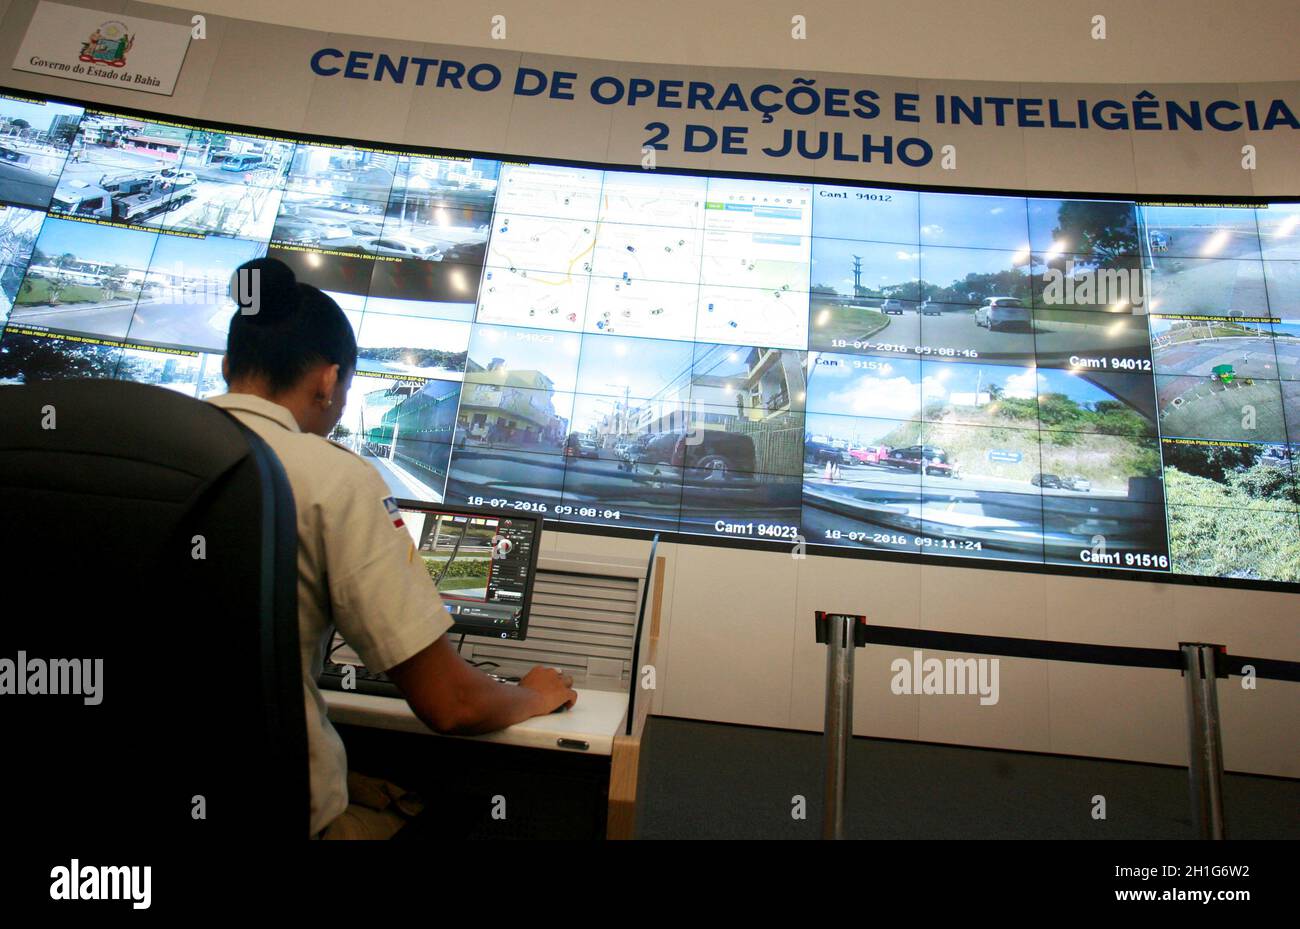 salvador, bahia - brasile - 18 luglio 2016: Panoramica del Centro operativo e di intelligence della Segreteria di pubblica sicurezza della Bahia, situata nel Bahi Foto Stock